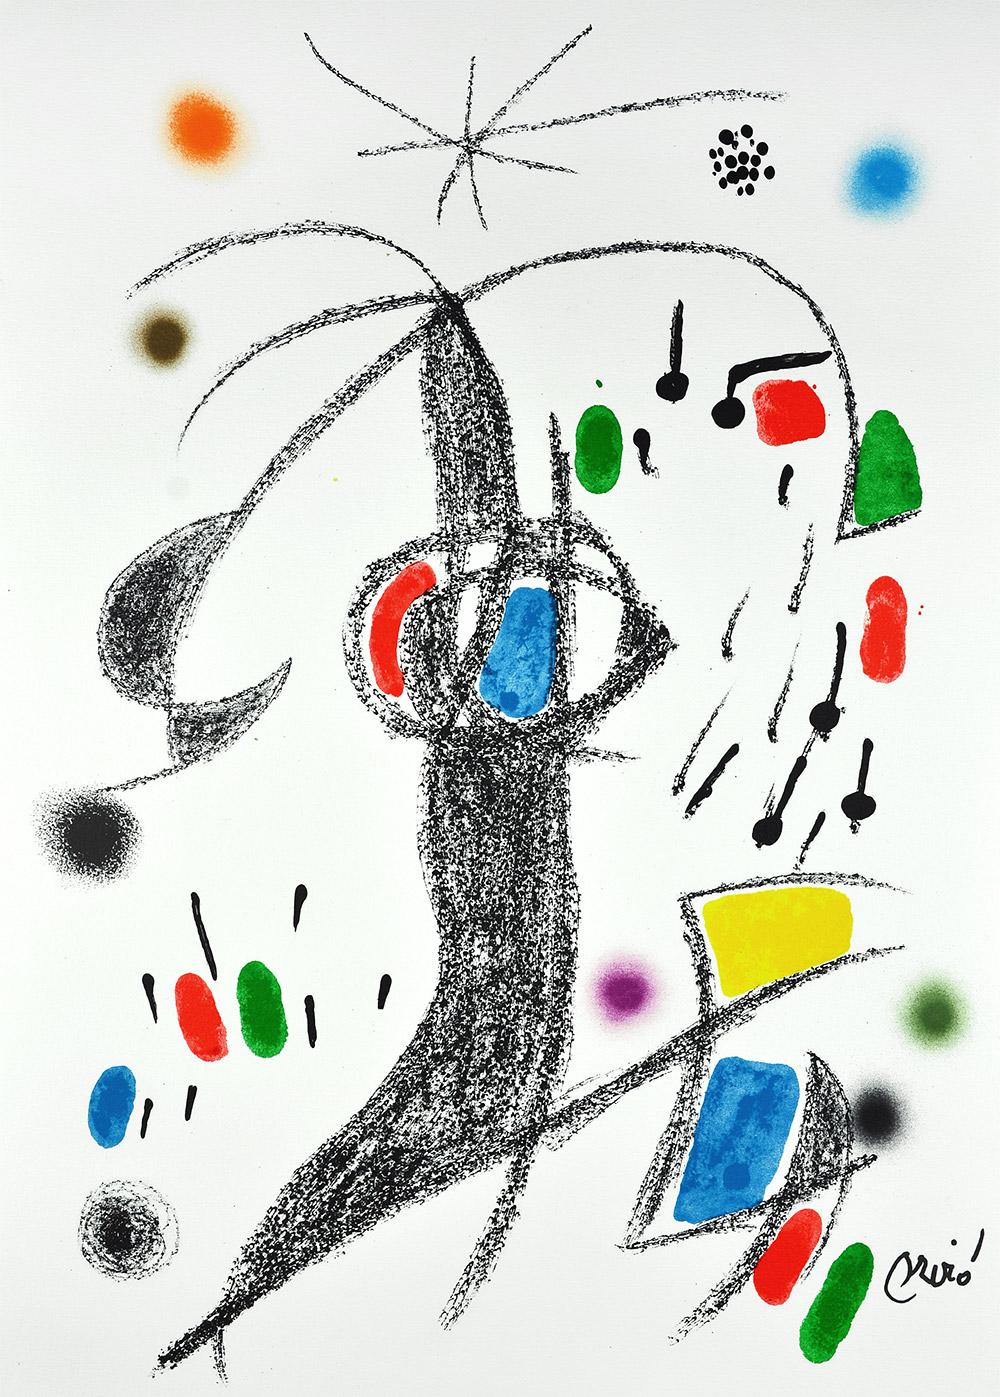 Joan Miró - Maravillas con variaciones acrósticas en el jardín de Miró XIX
Date of creation: 1975
Medium: Lithograph on Gvarro paper
Edition: 1500
Size: 49,5 x 35,5 cm
Observations: Lithograph on Gvarro paper plate signed. Edited by Polígrafa,